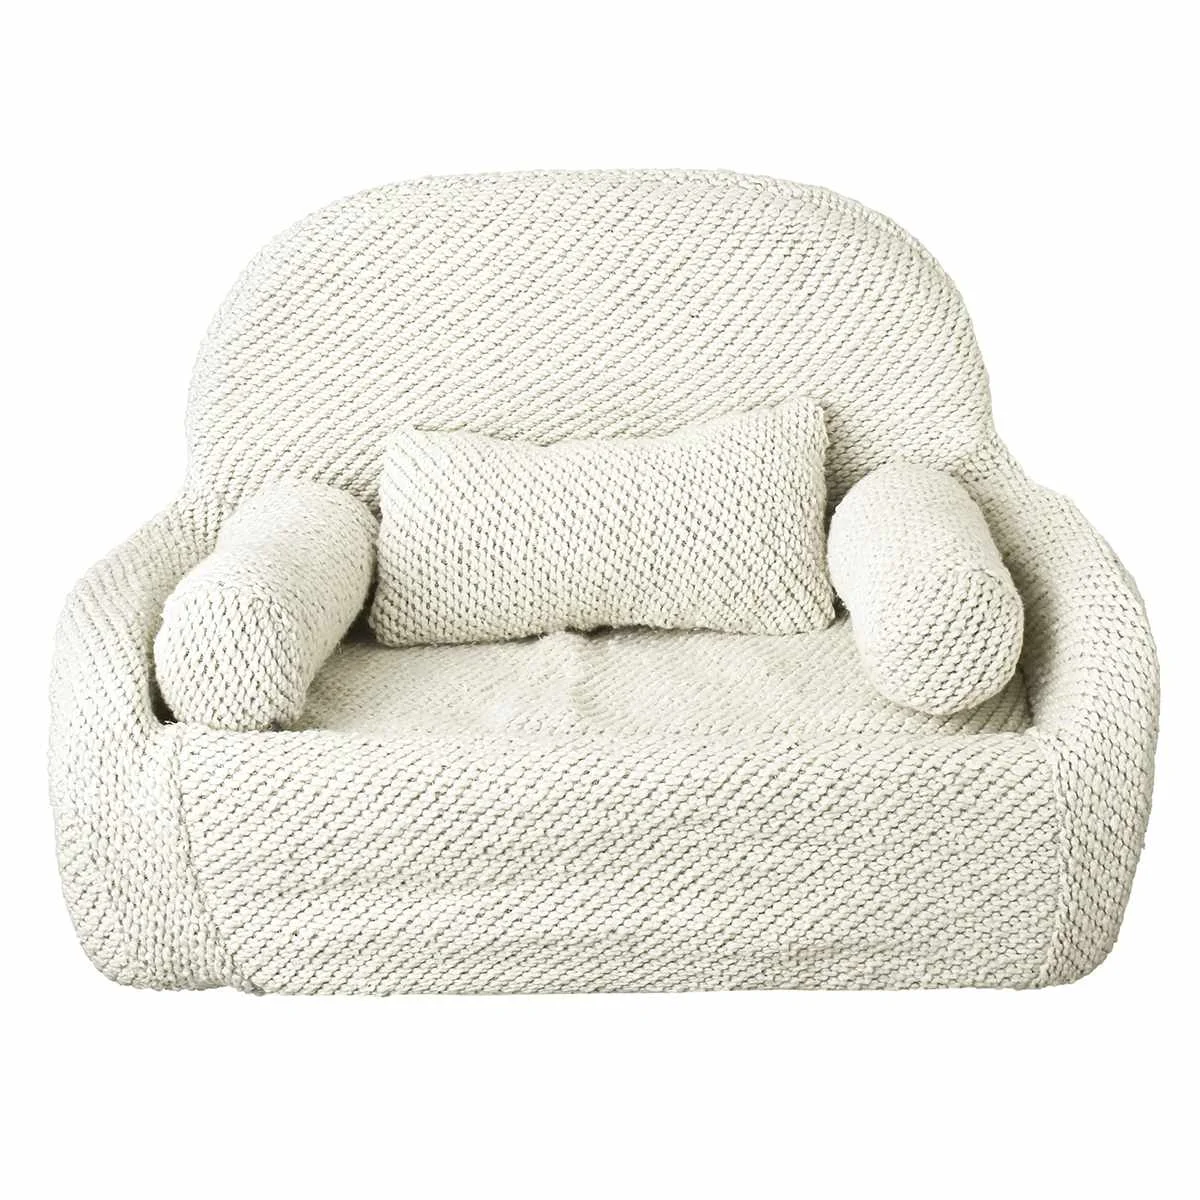 7 типов детский диван фотографии Подушка сиденья мягкая новорожденного стул для позирования с подушкой реквизит для фотосессии фон студии